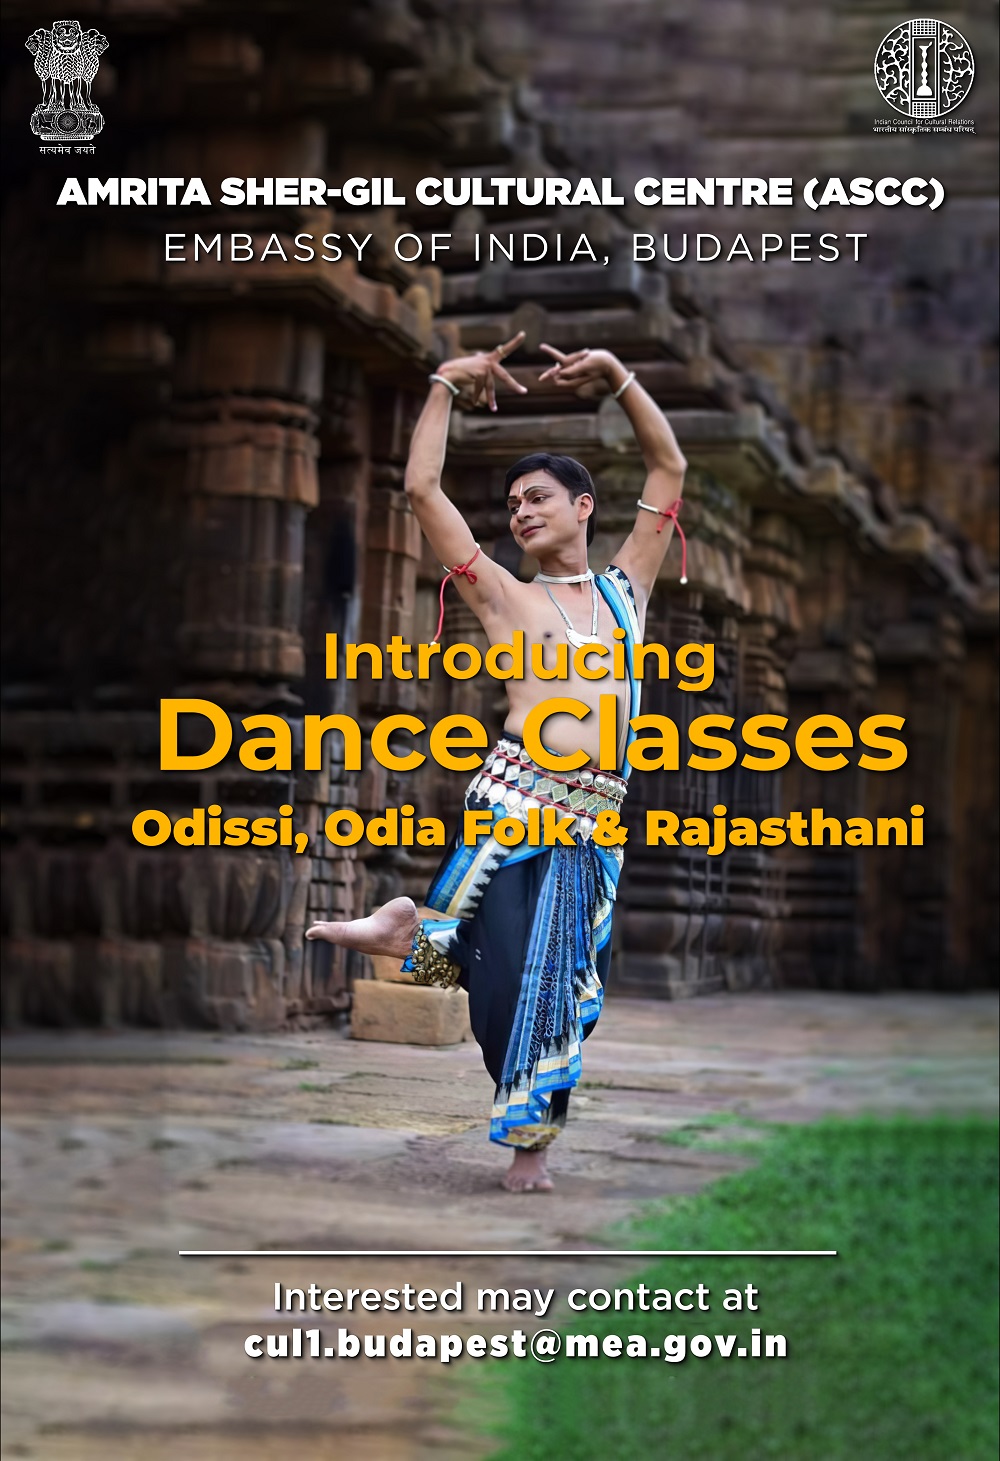 Odisszi és indiai néptánc oktatás az Amrita Sher-Gil Kulturális Központban / Odissi and folk dance classes led by India based teacher at ASCC